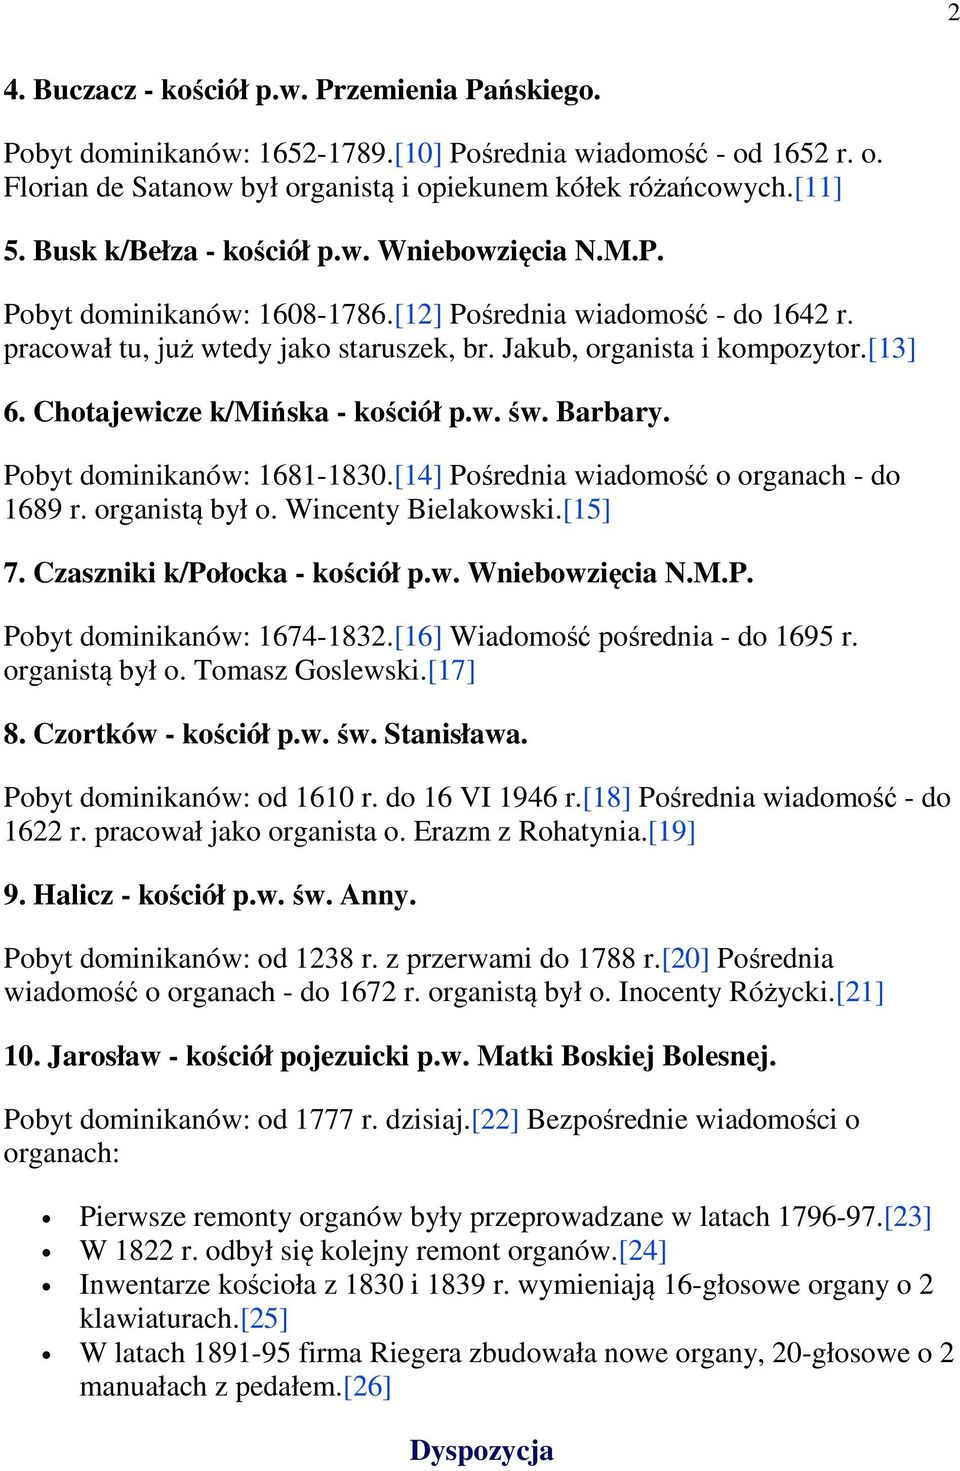 Chotajewicze k/mińska - kościół p.w. św. Barbary. Pobyt dominikanów: 1681-1830.[14] Pośrednia wiadomość o organach - do 1689 r. organistą był o. Wincenty Bielakowski.[15] 7.